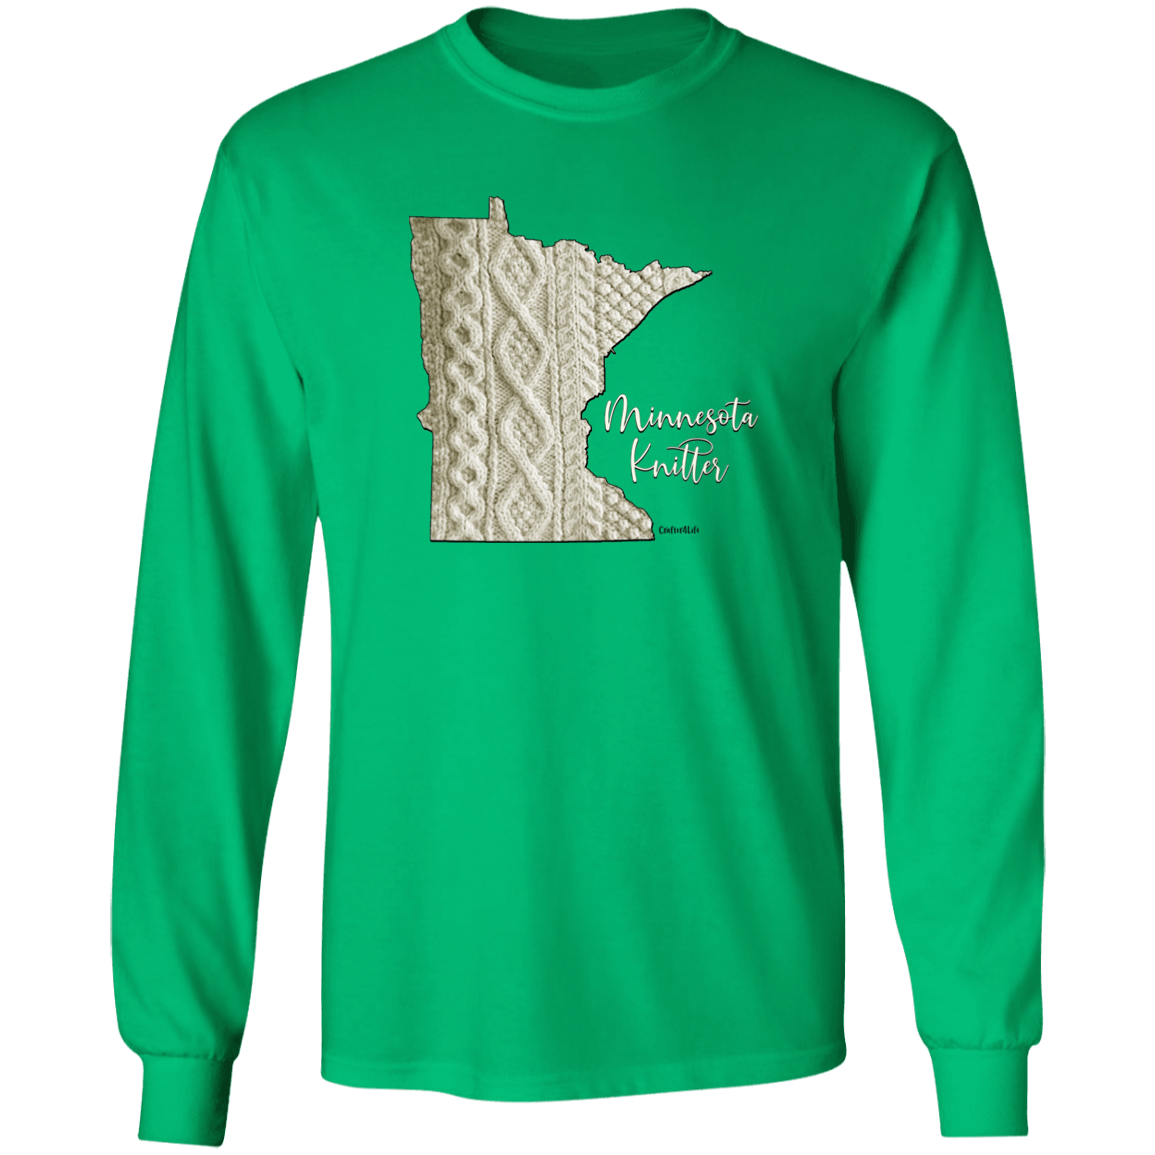 Minnesota Knitter LS Ultra Cotton T-Shirt